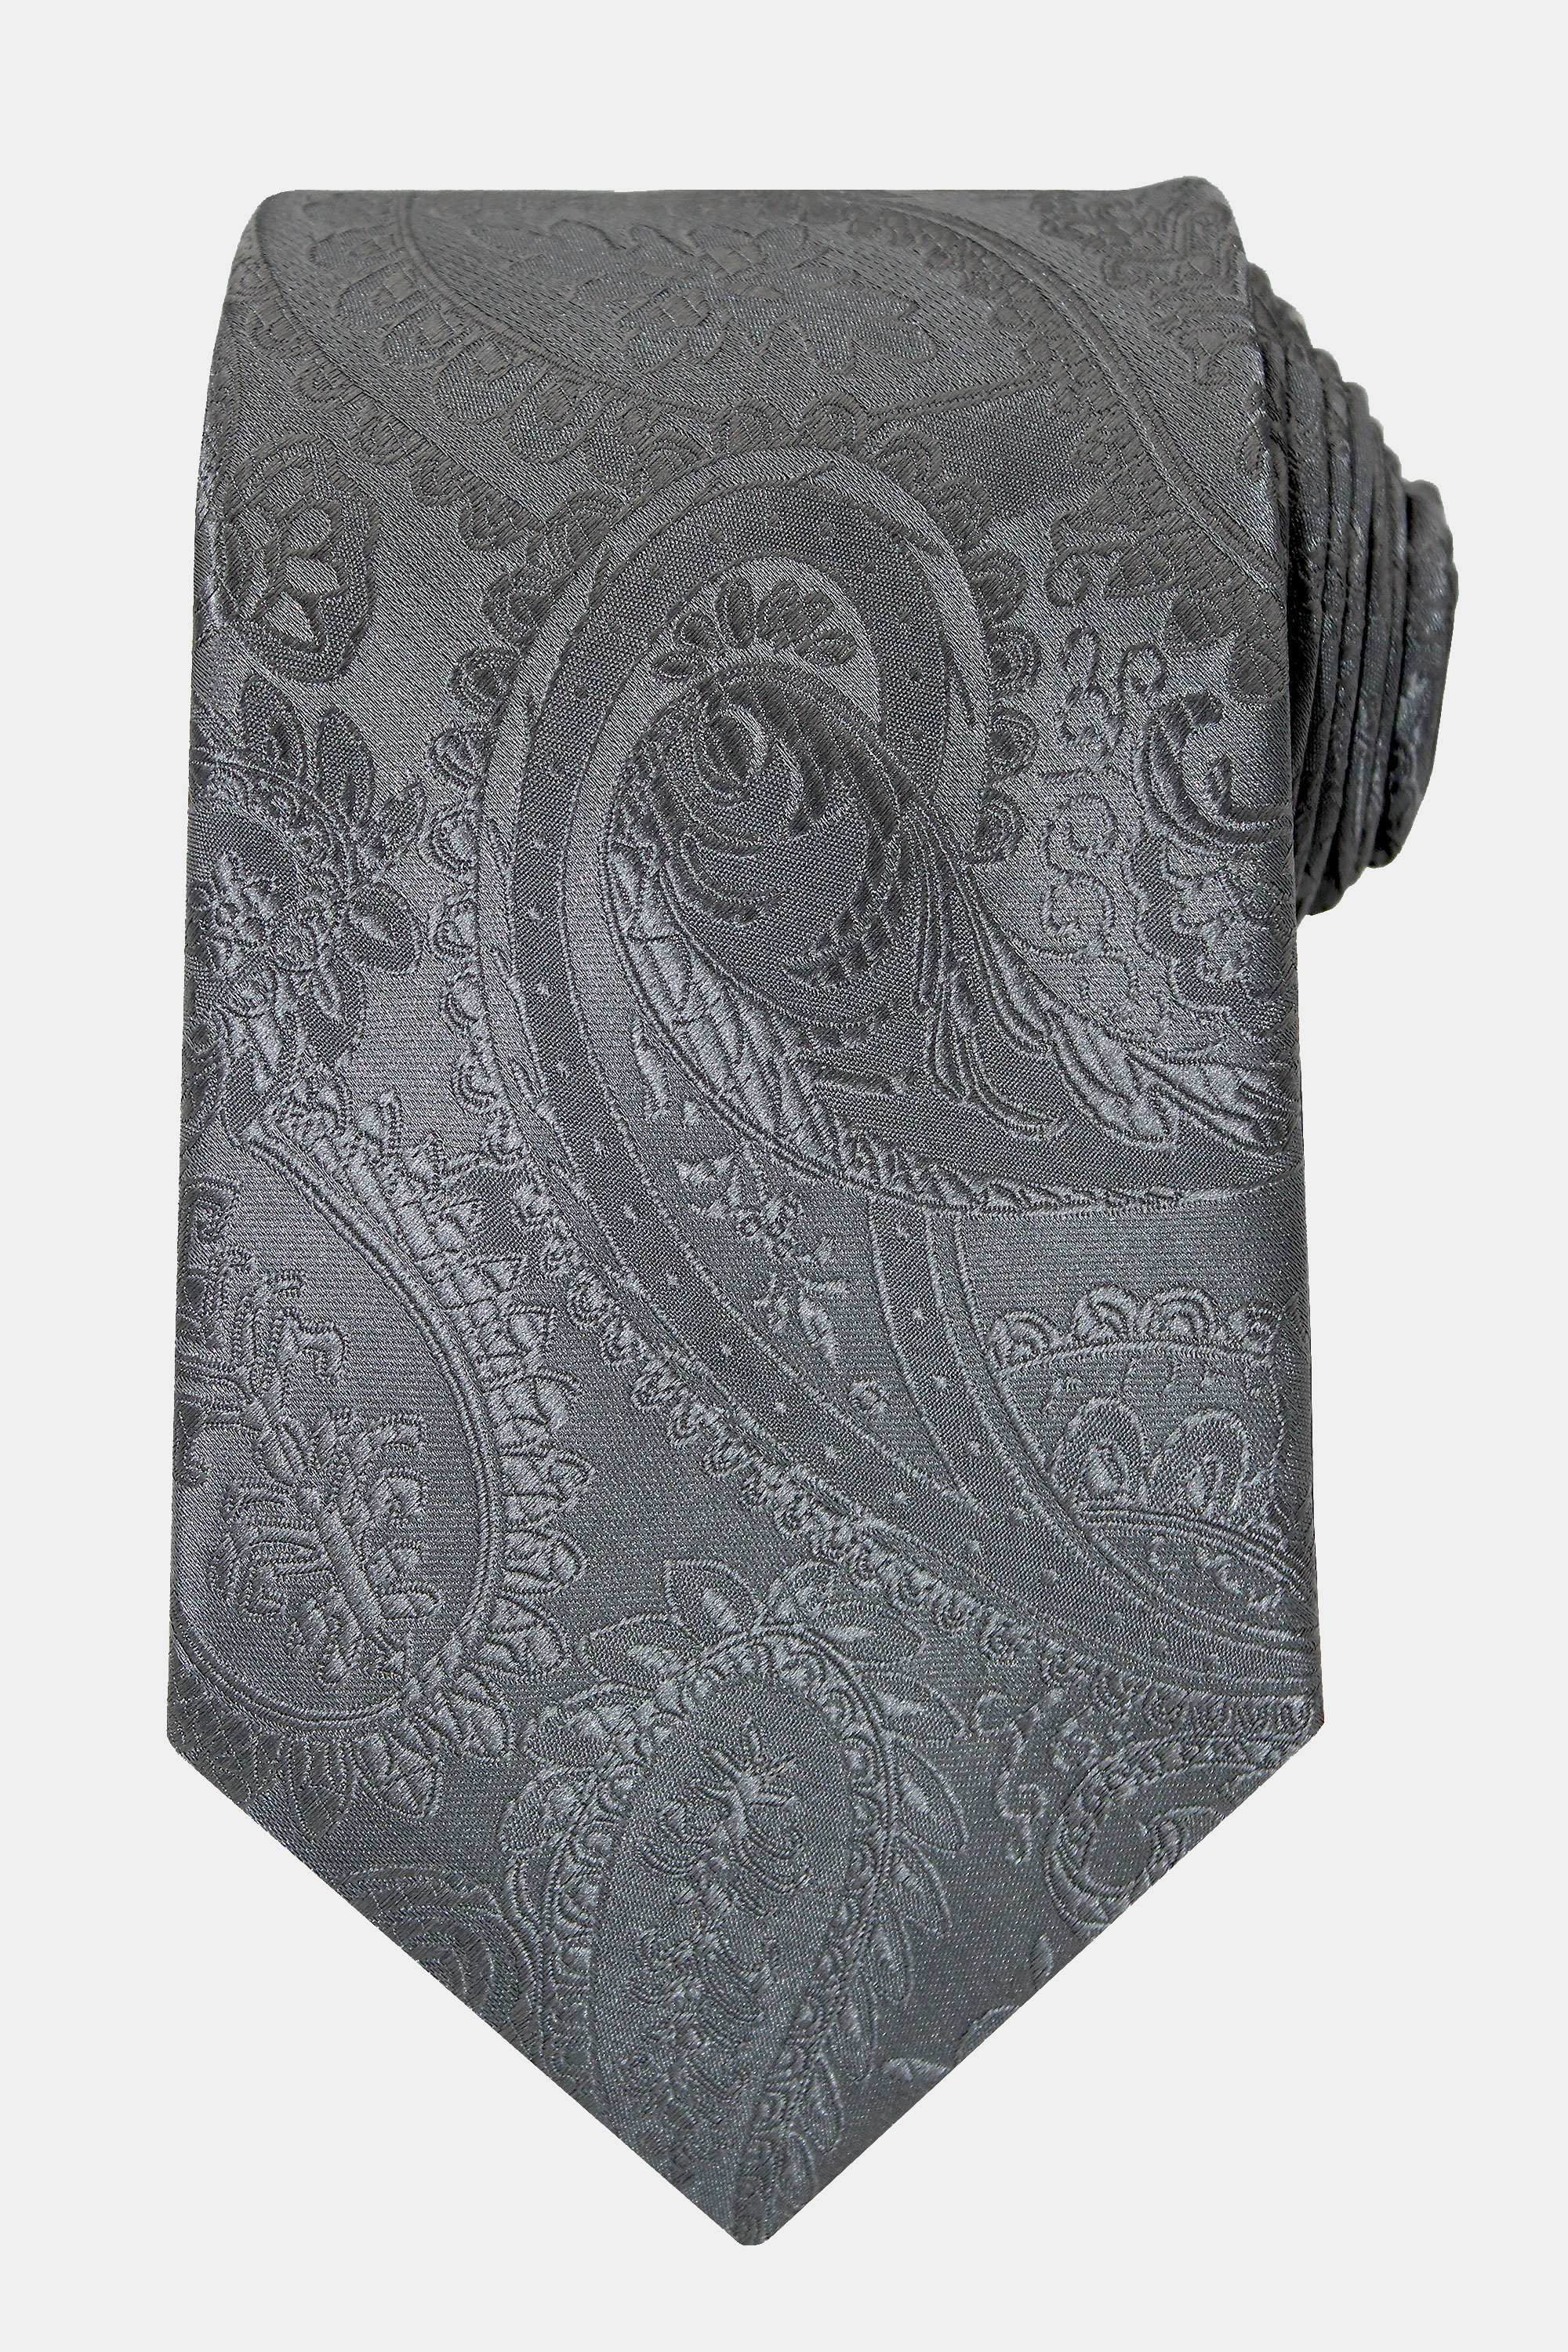 Charcoal-Grey-Paisley-Tie-from-Gentlemansguru.com_